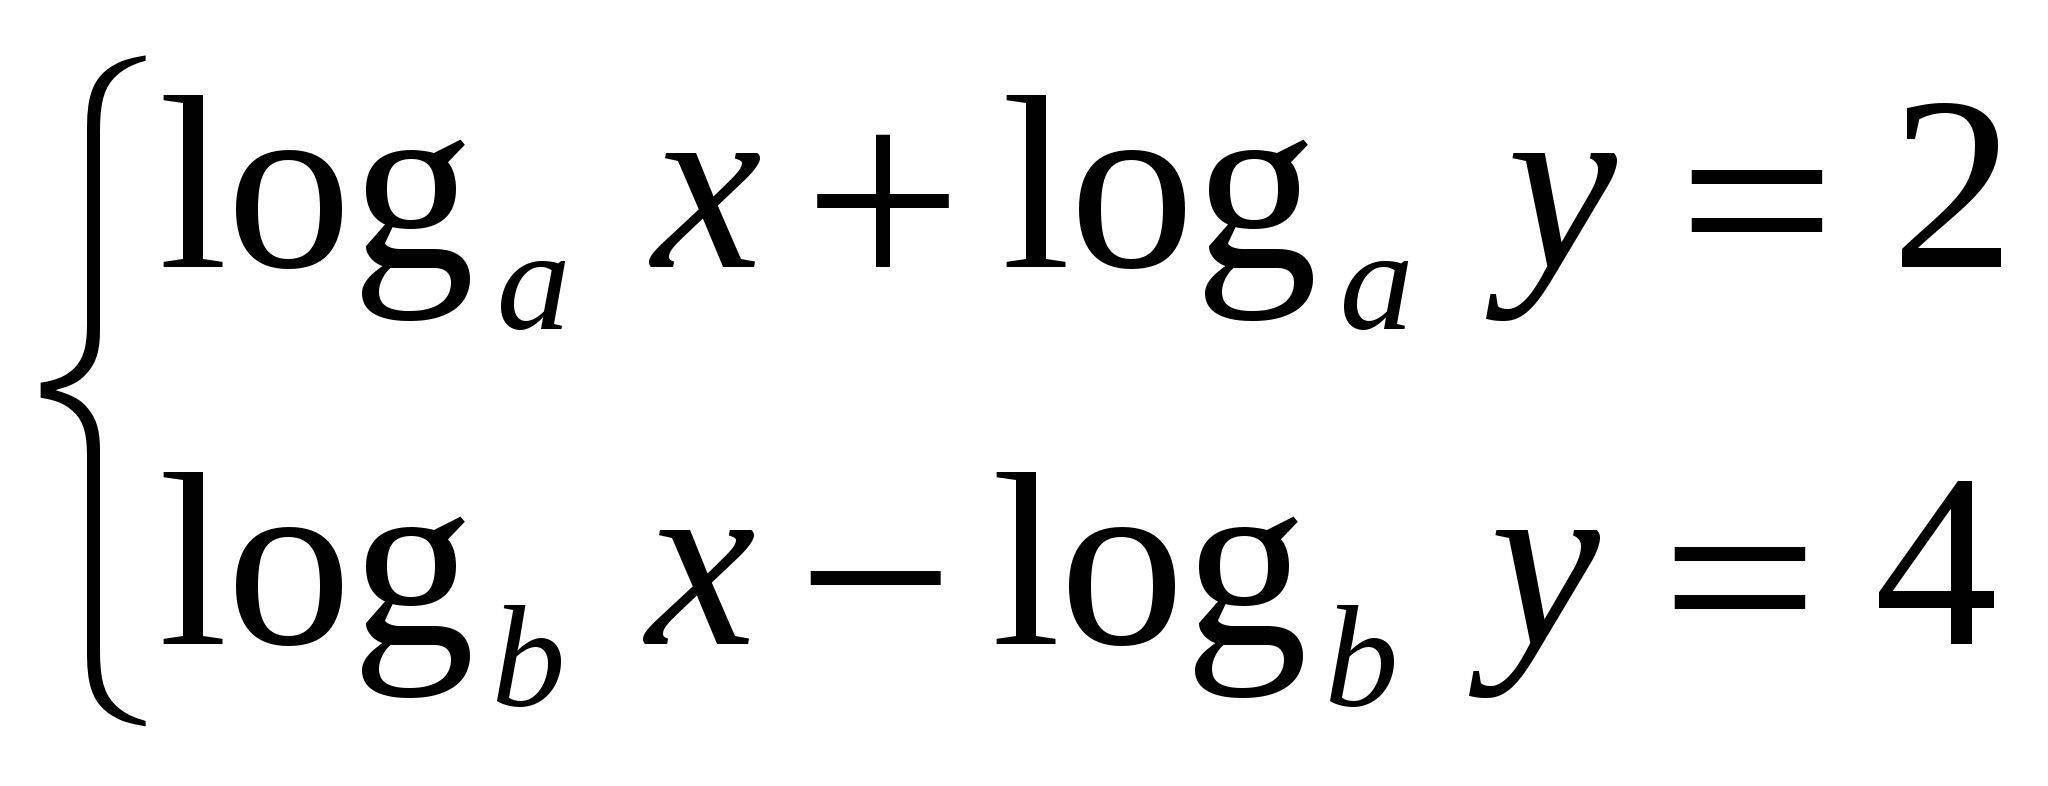 Тест по теме логарифмы